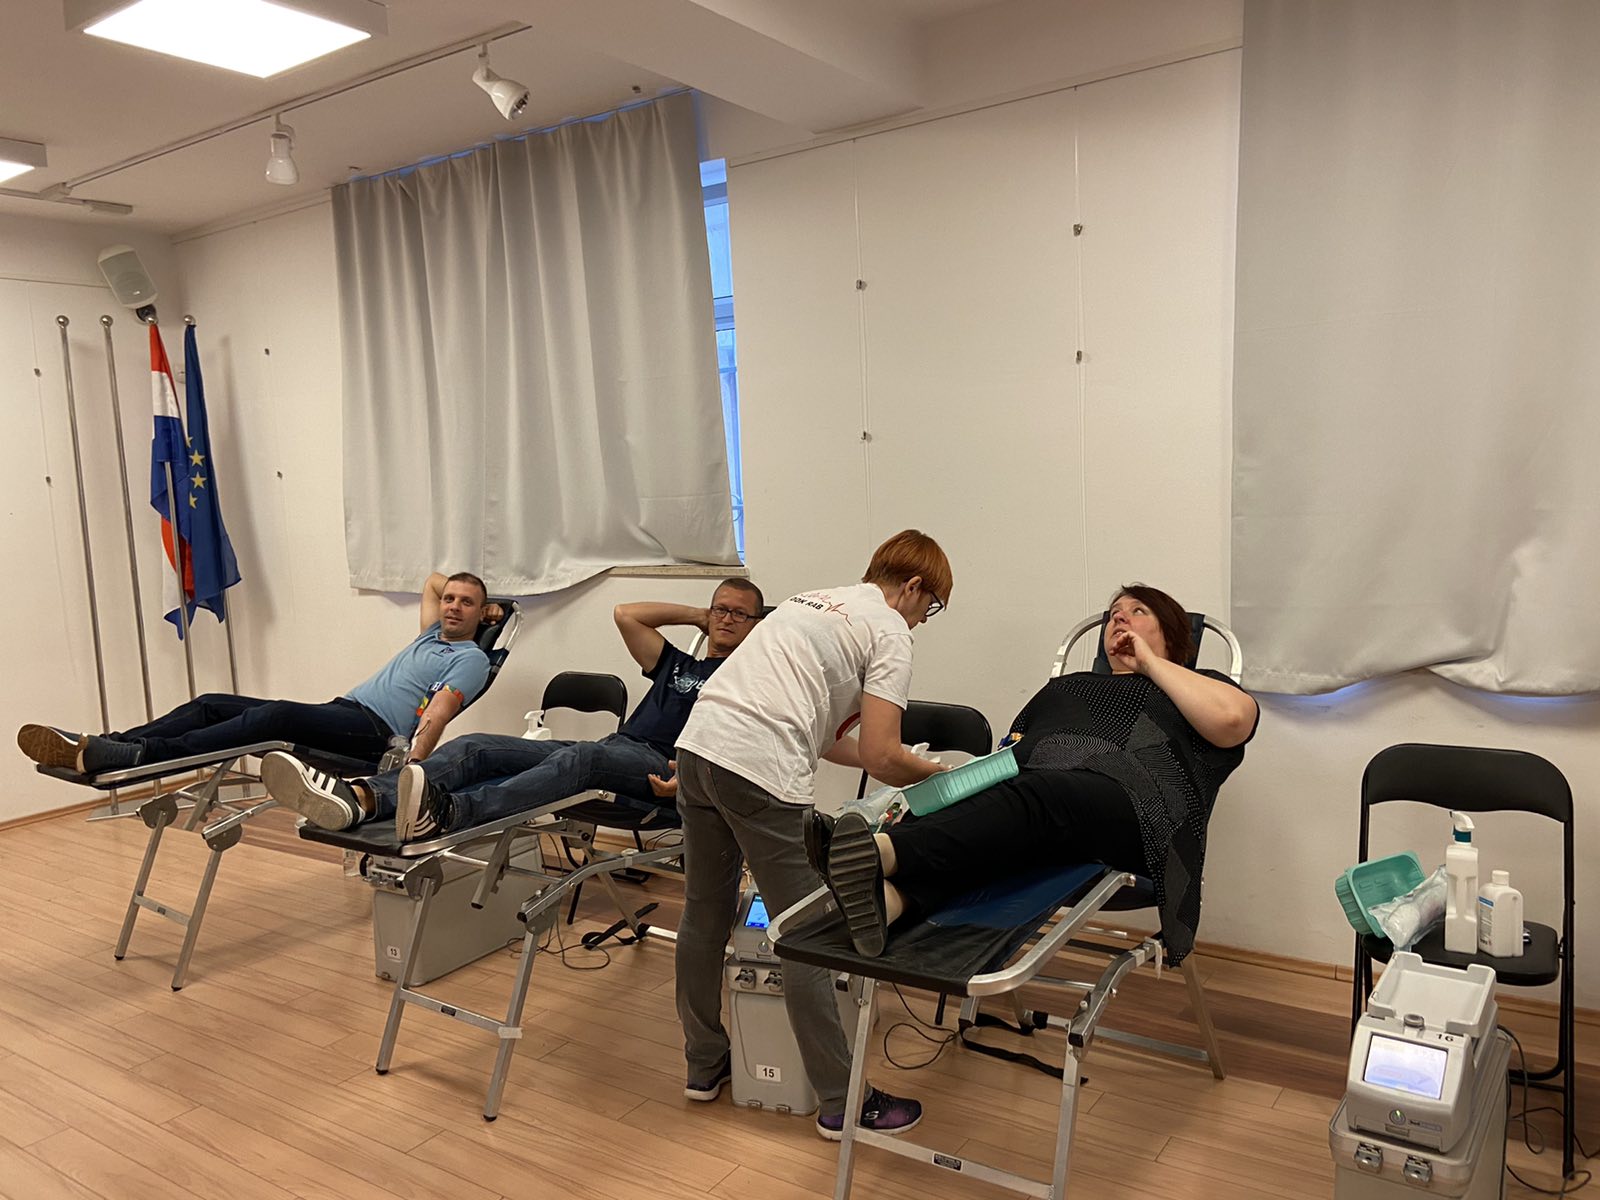 Općina Medulin s djelatnicima i mještanima prikupila 17 doza krvi na 5. akciji dobrovoljnog darivanja u Medulinu! Hvala ❤